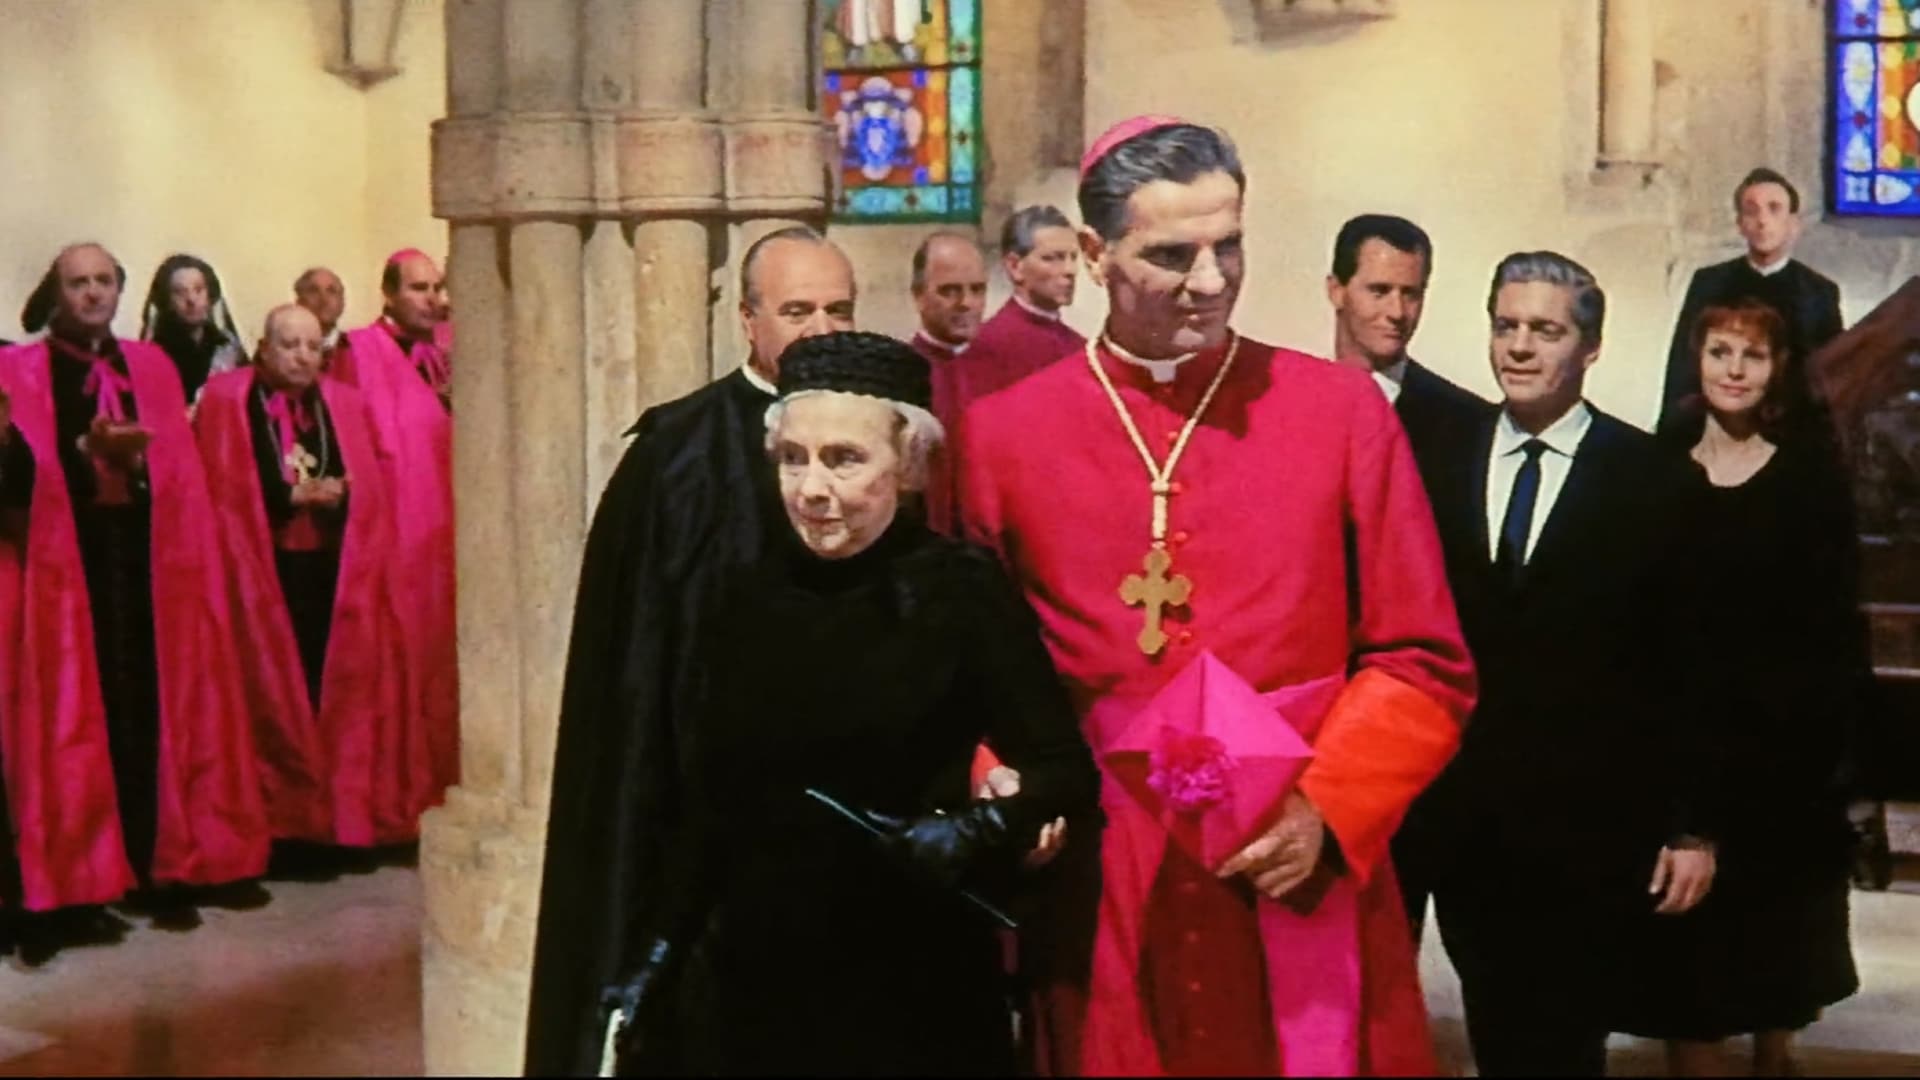 The Cardinal (1963)